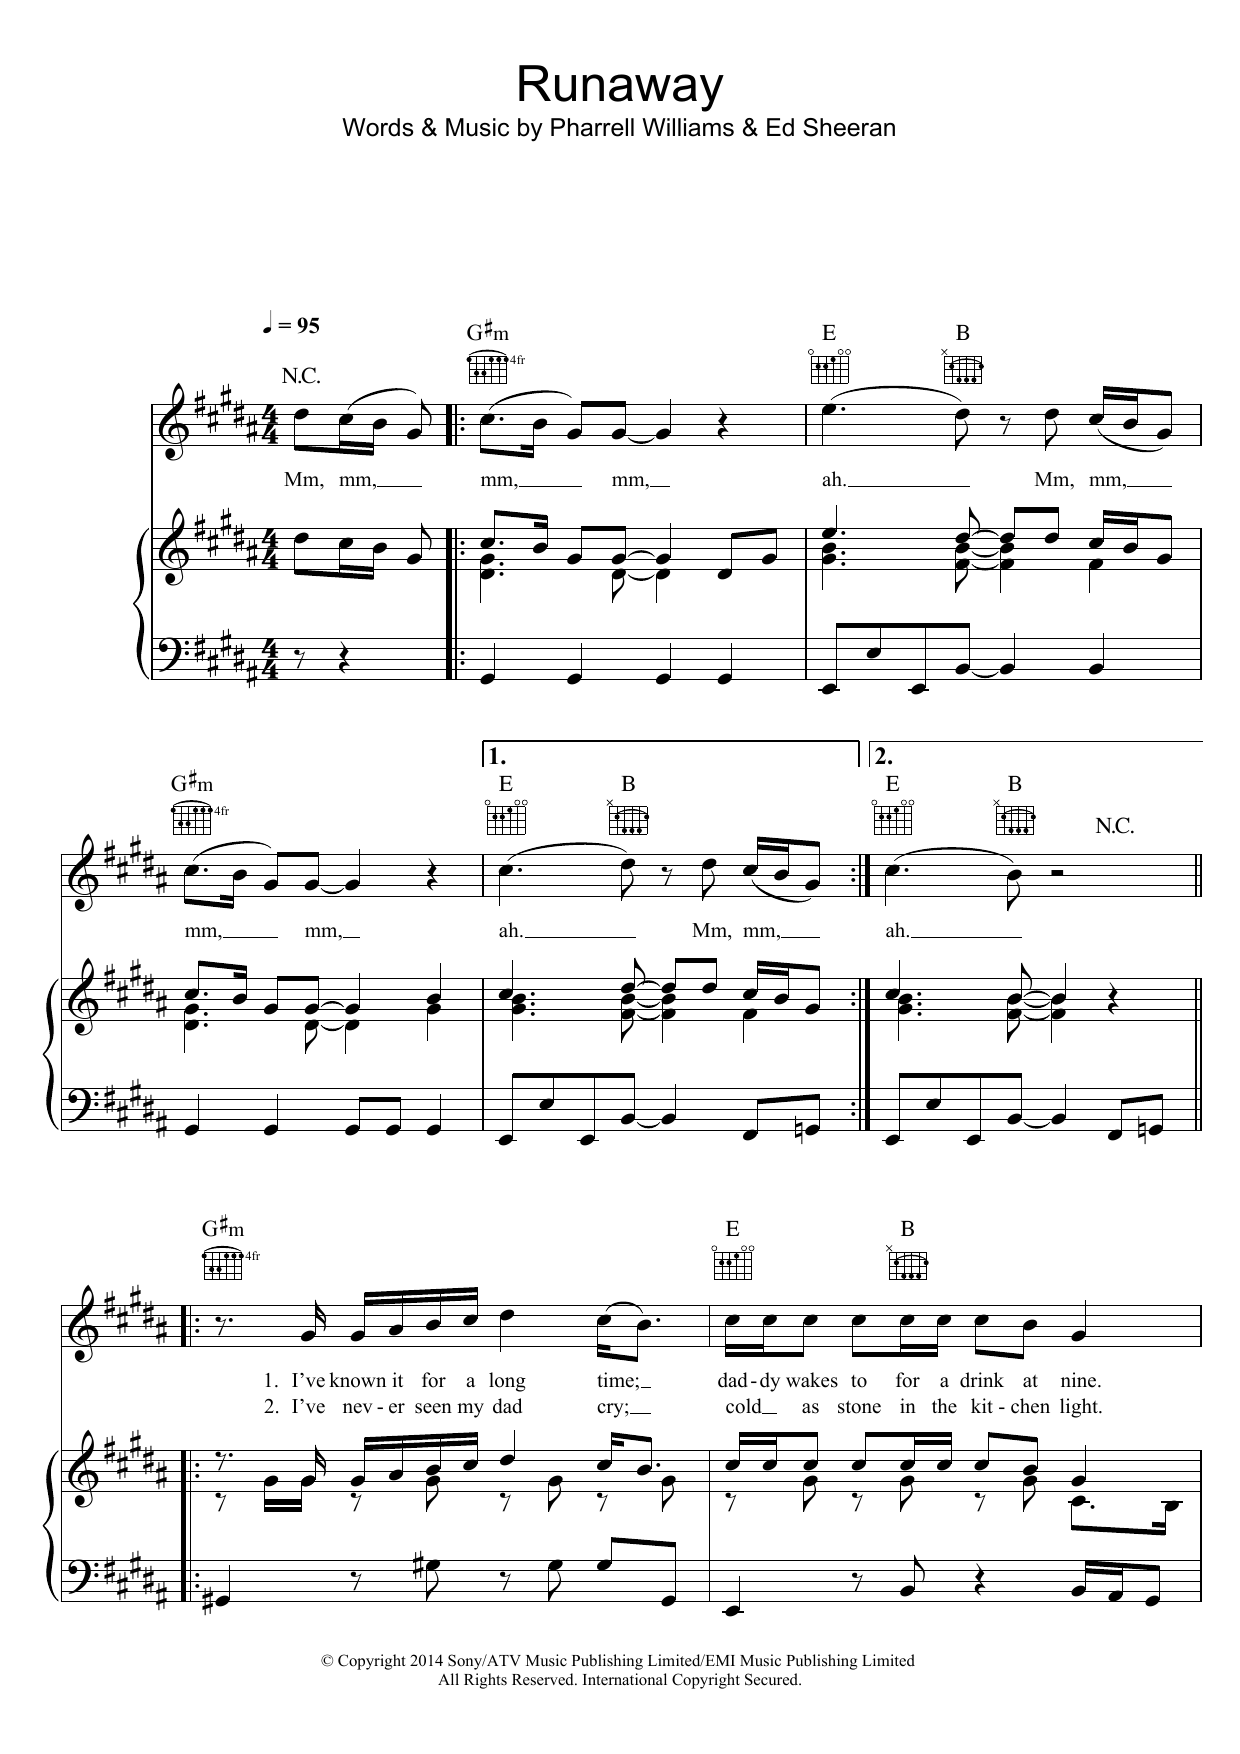 Ed Sheeran Runaway Sheet Music Notes & Chords for Ukulele - Download or Print PDF